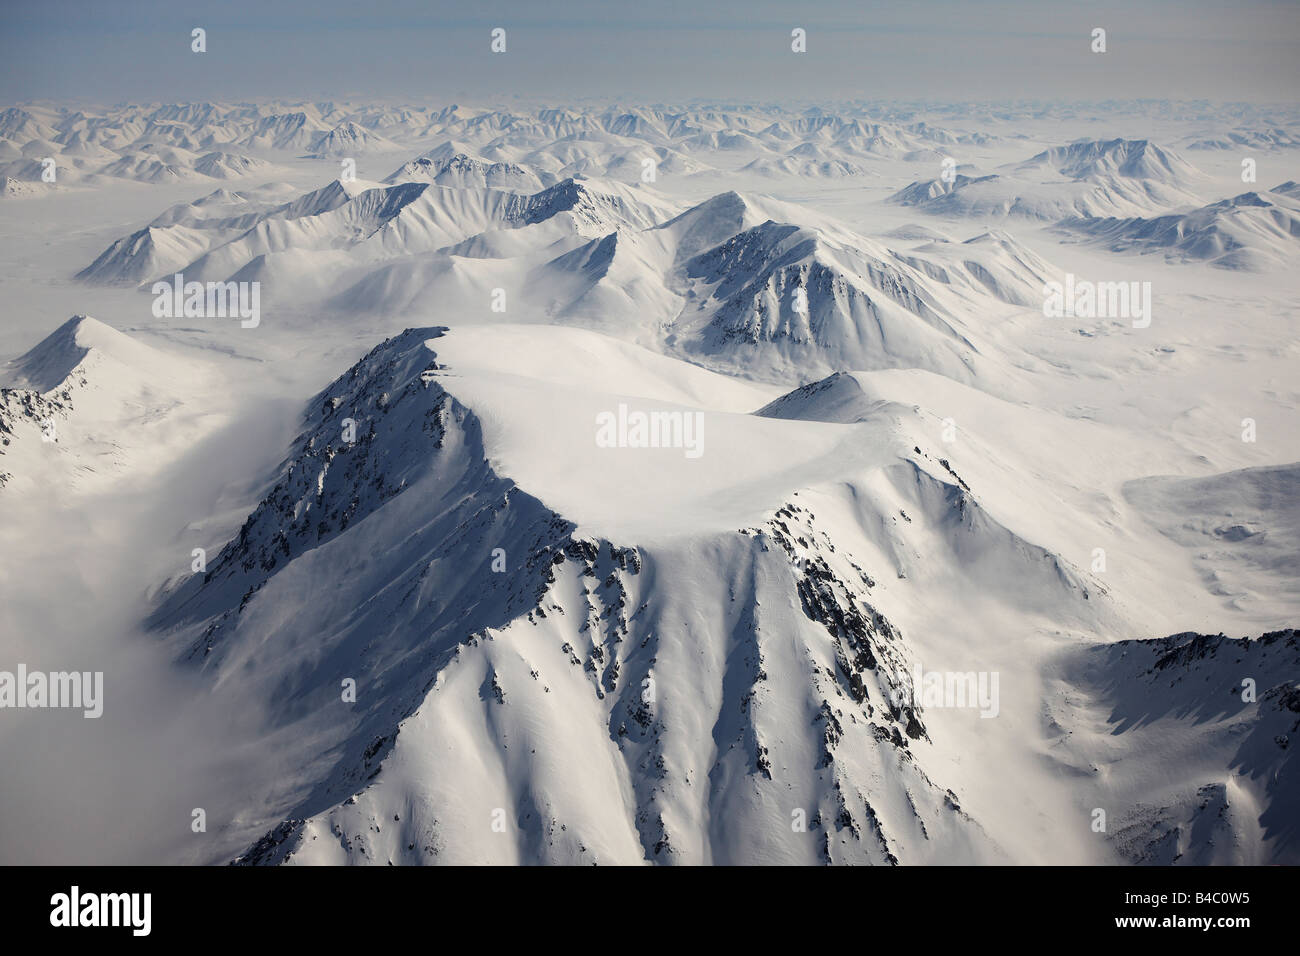 Vue aérienne de montagnes couvertes de neige, entre la Sibérie Tchoukotka Anadyr et Egvekinot, Russie Banque D'Images